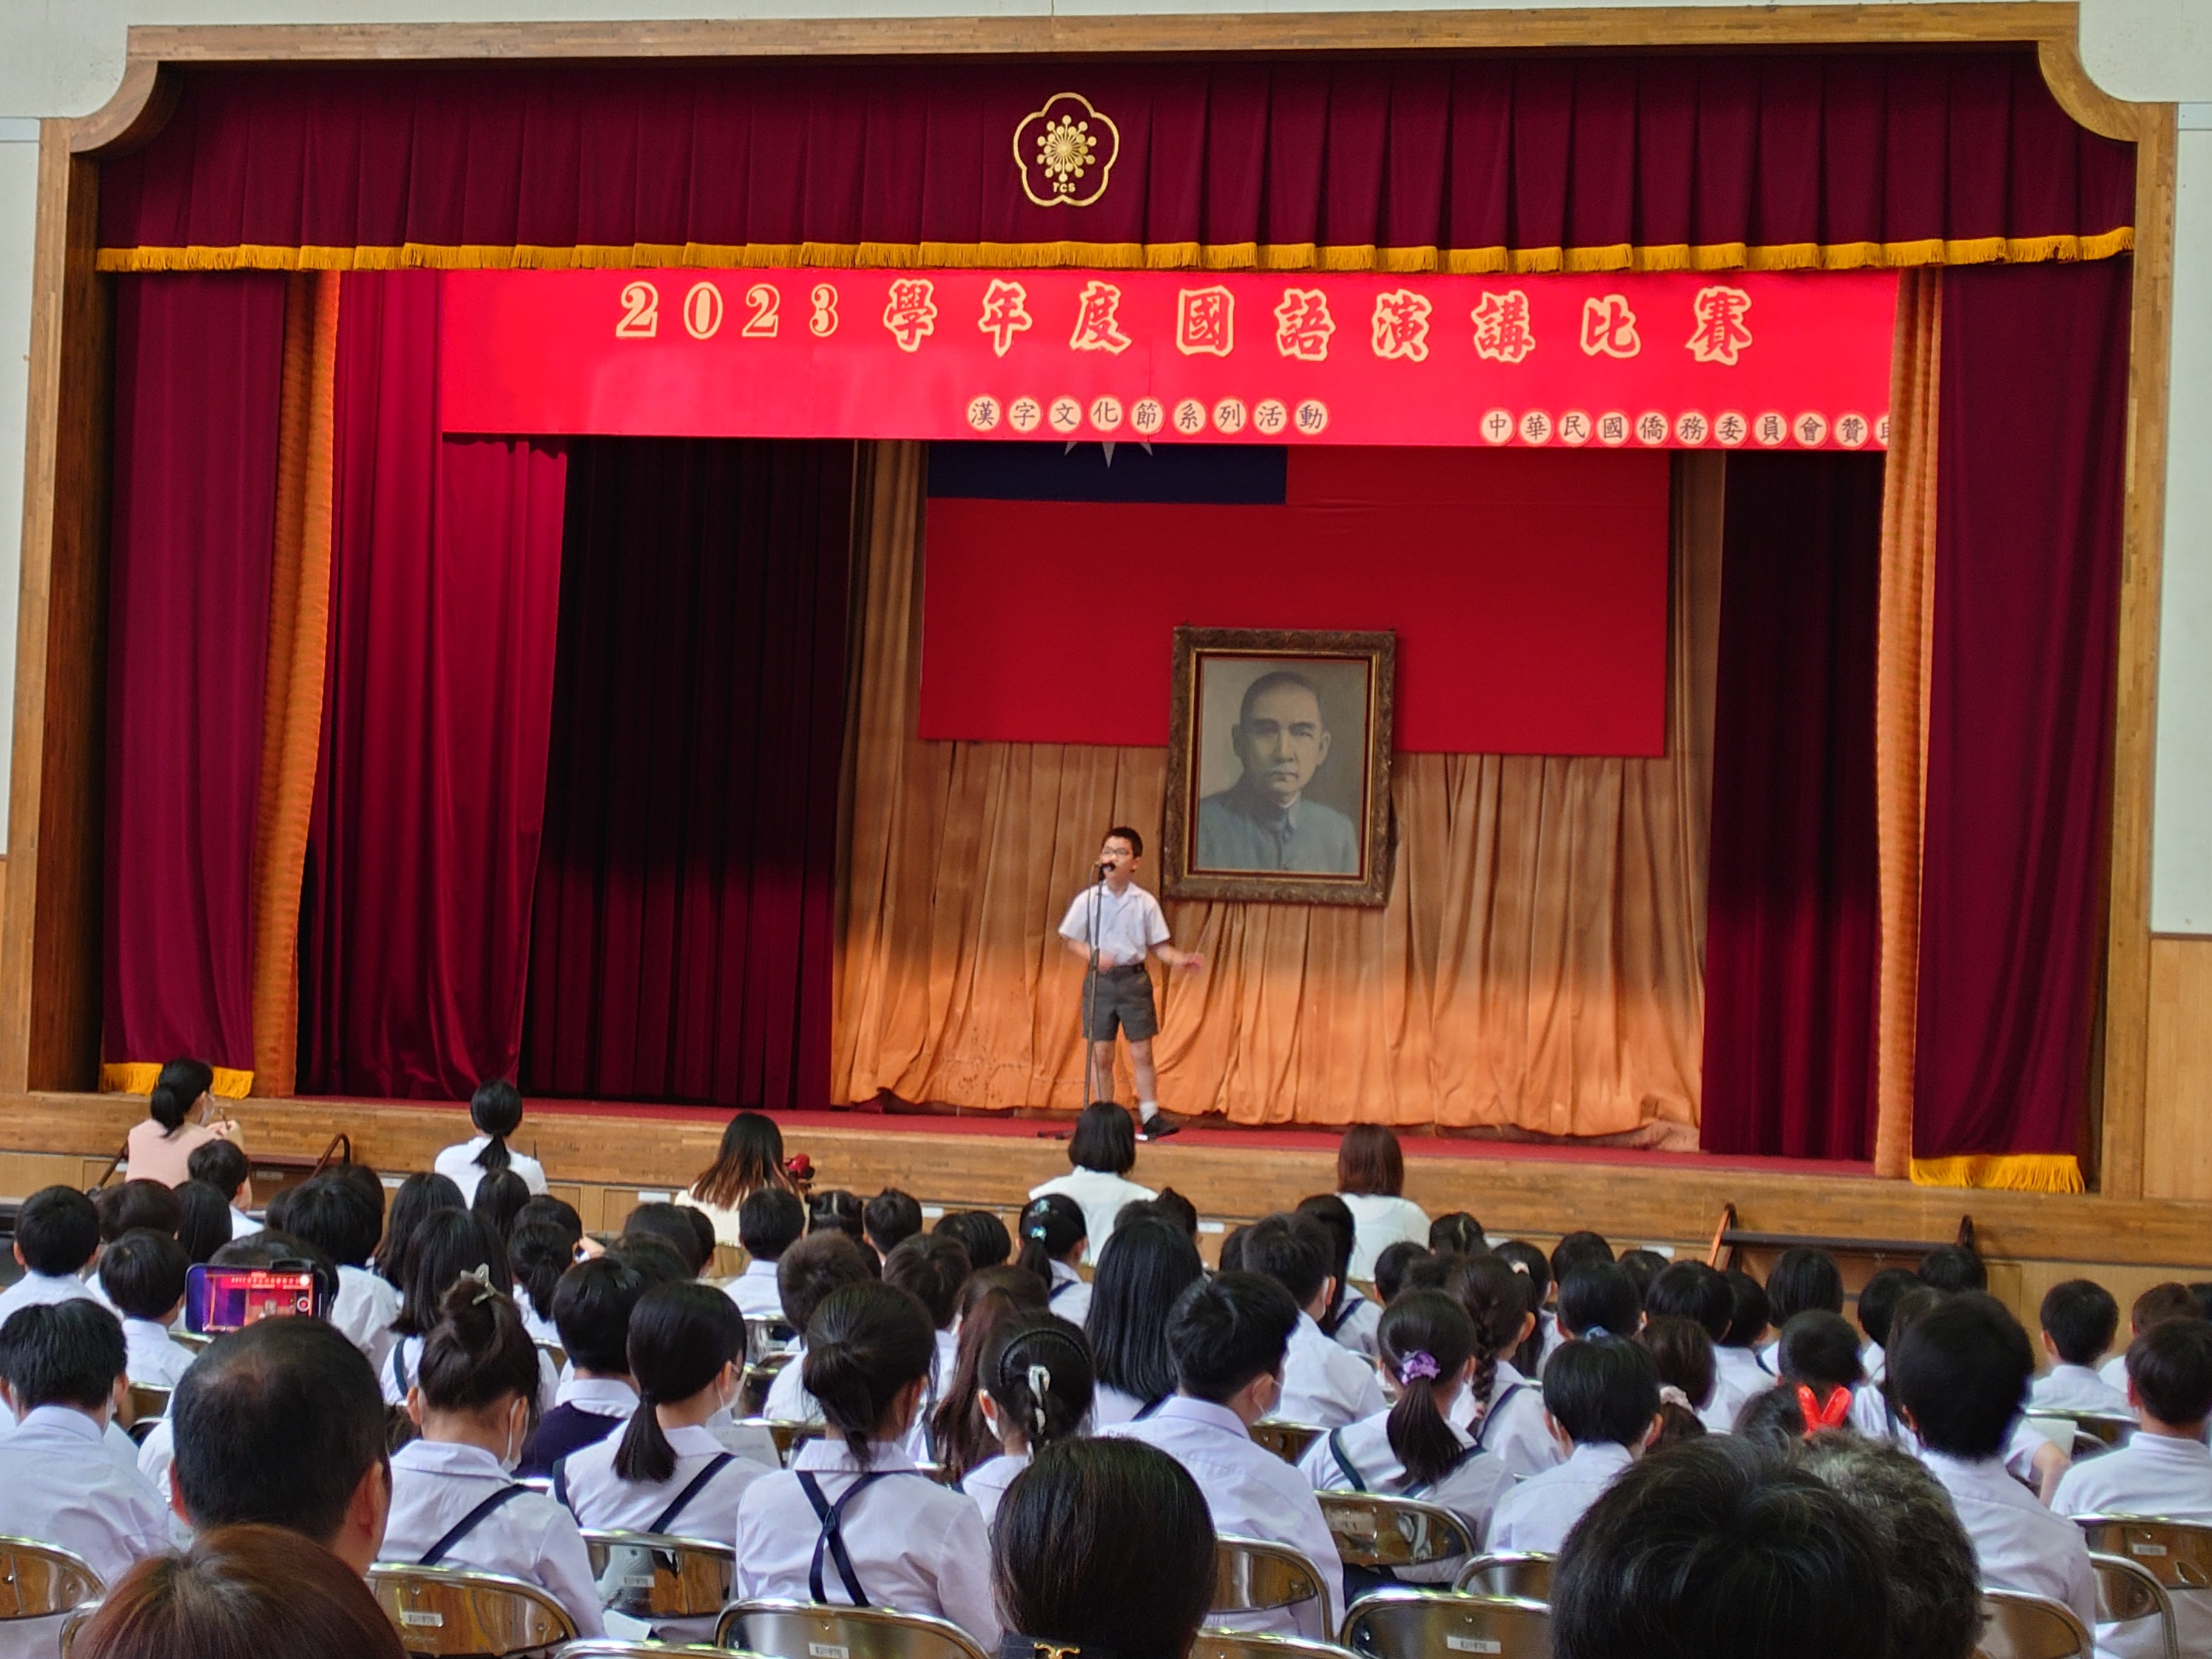 2023年度漢字文化節系列活動國語演講比賽圖片